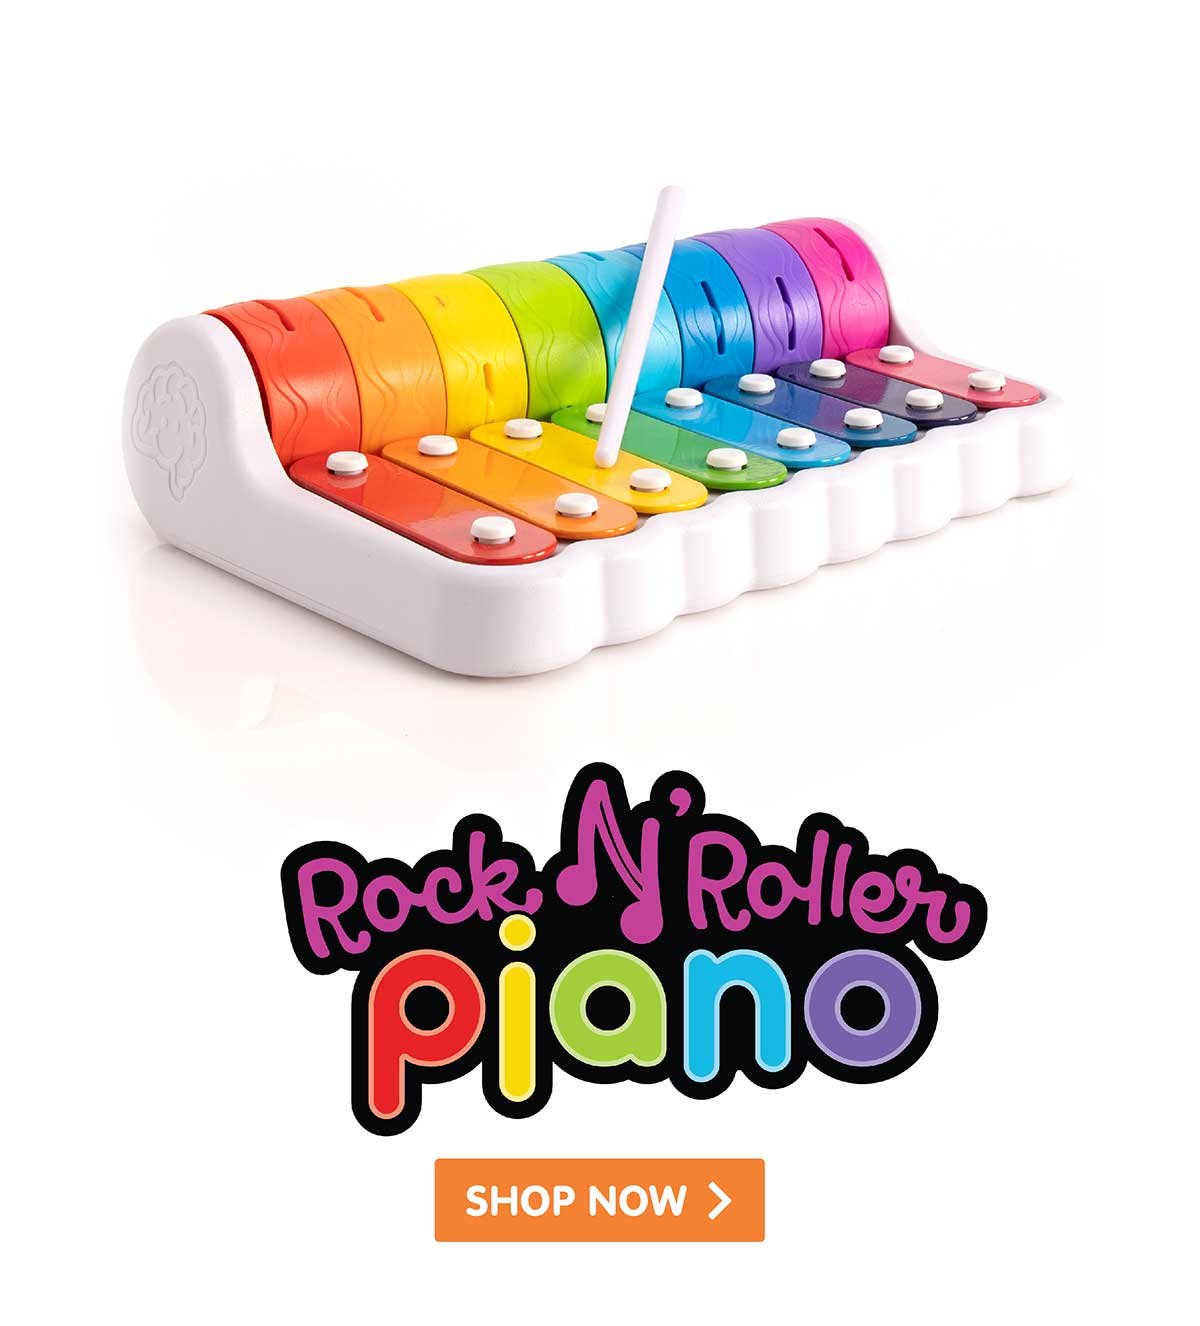 Rock ’n Roller Piano